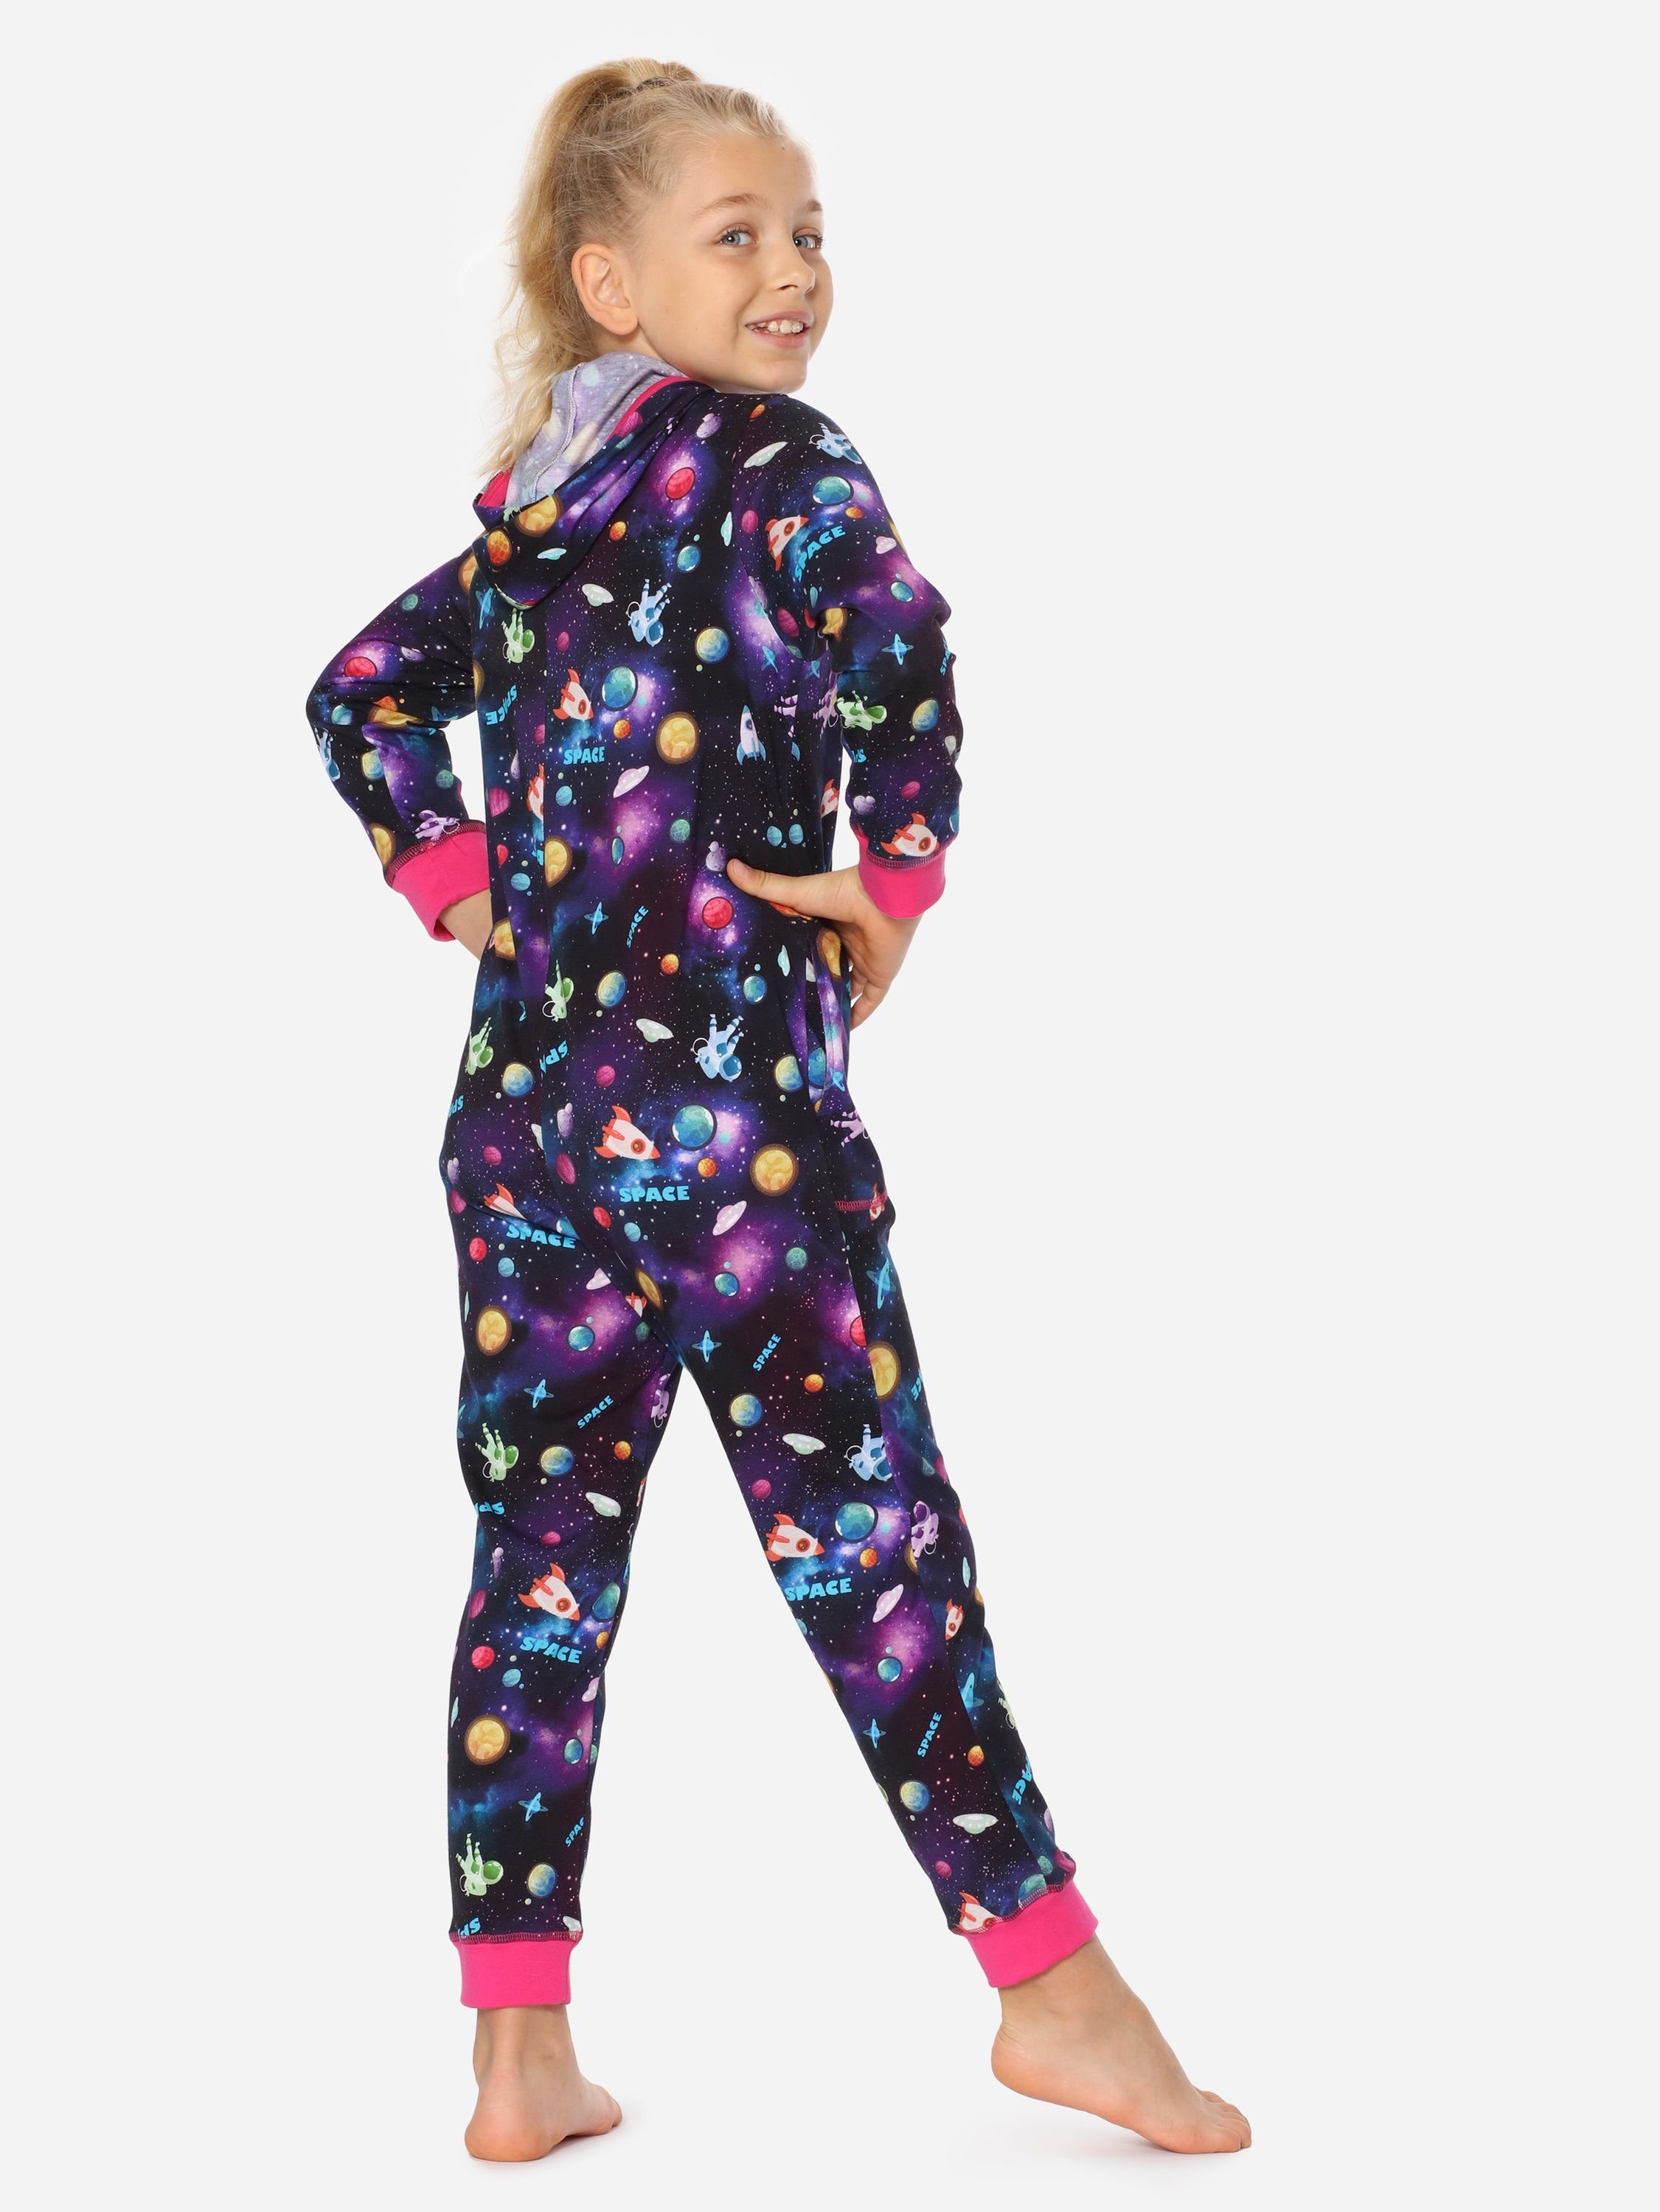 Rosa Schlafanzug Merry MS10-223 Mädchen Style Kapuze Platz mit Schlafoverall